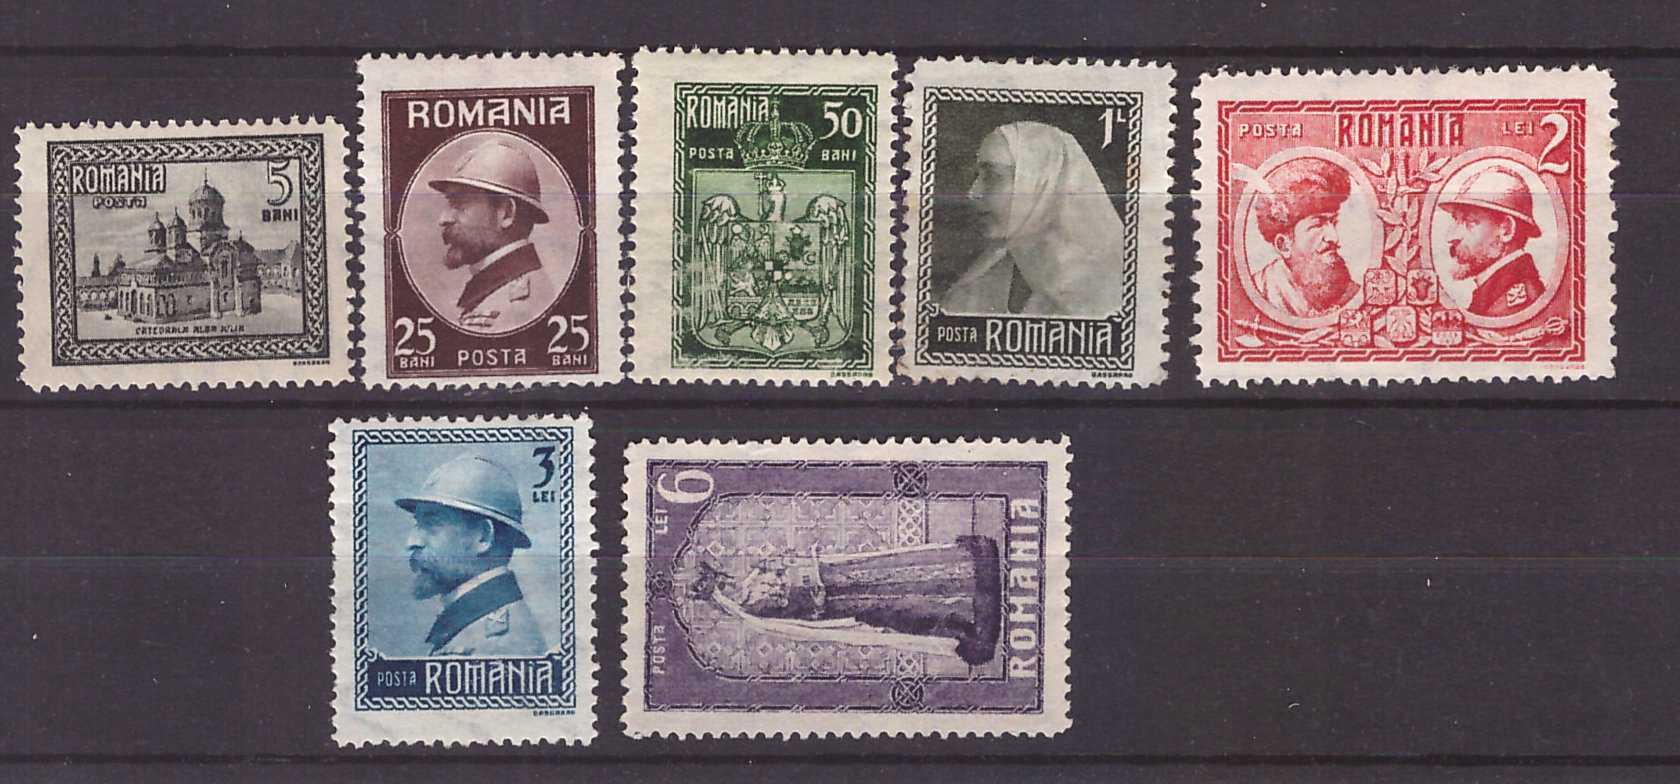 1922 - Incoronarea Regelui Ferdinand, serie nestampilata cu sarn